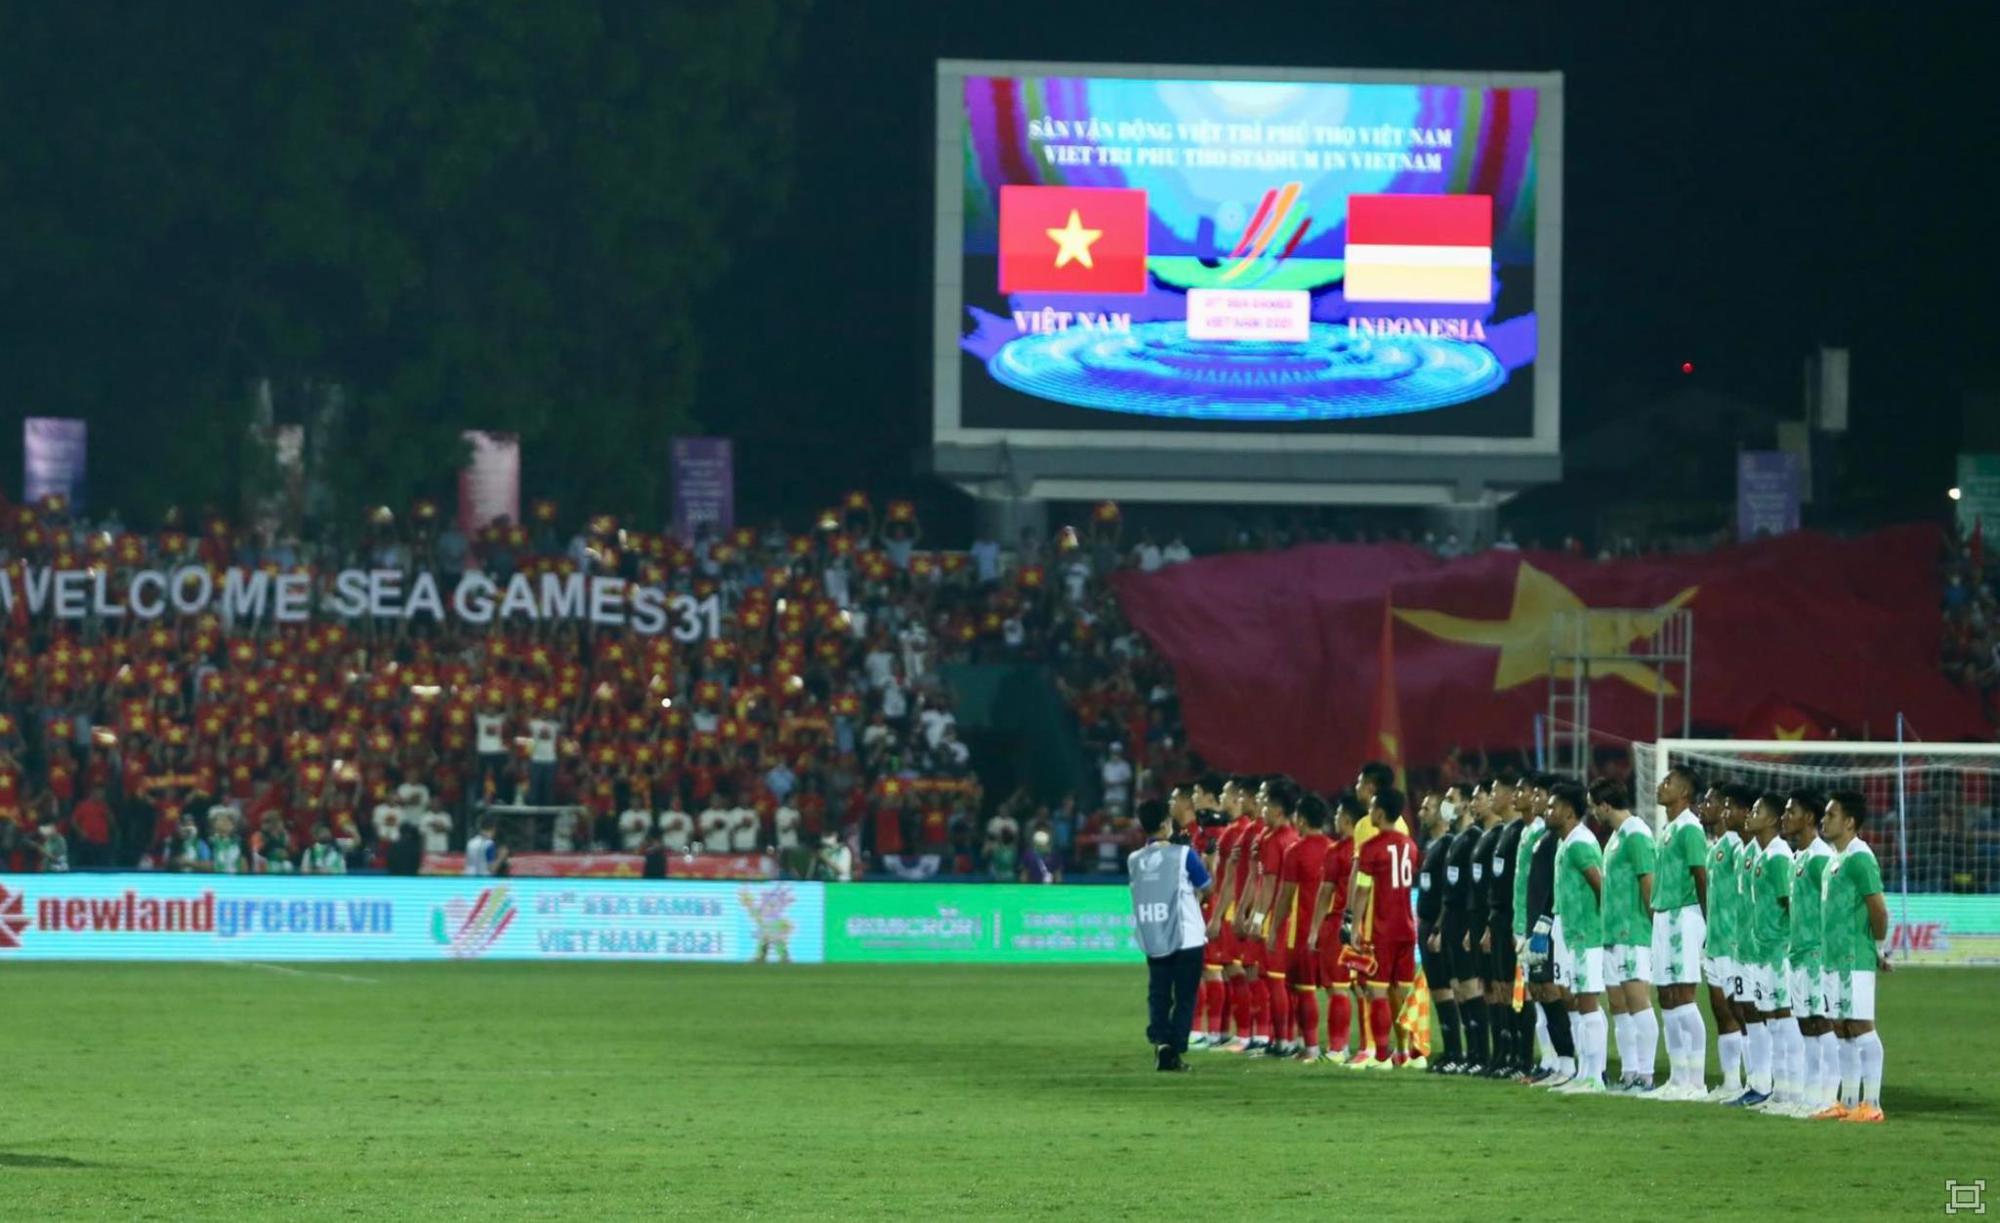 Nhìn lại hành trình với những màn trình diễn ấn tượng của bóng đá Việt Nam tại SEA Games 31 - Ảnh 1.